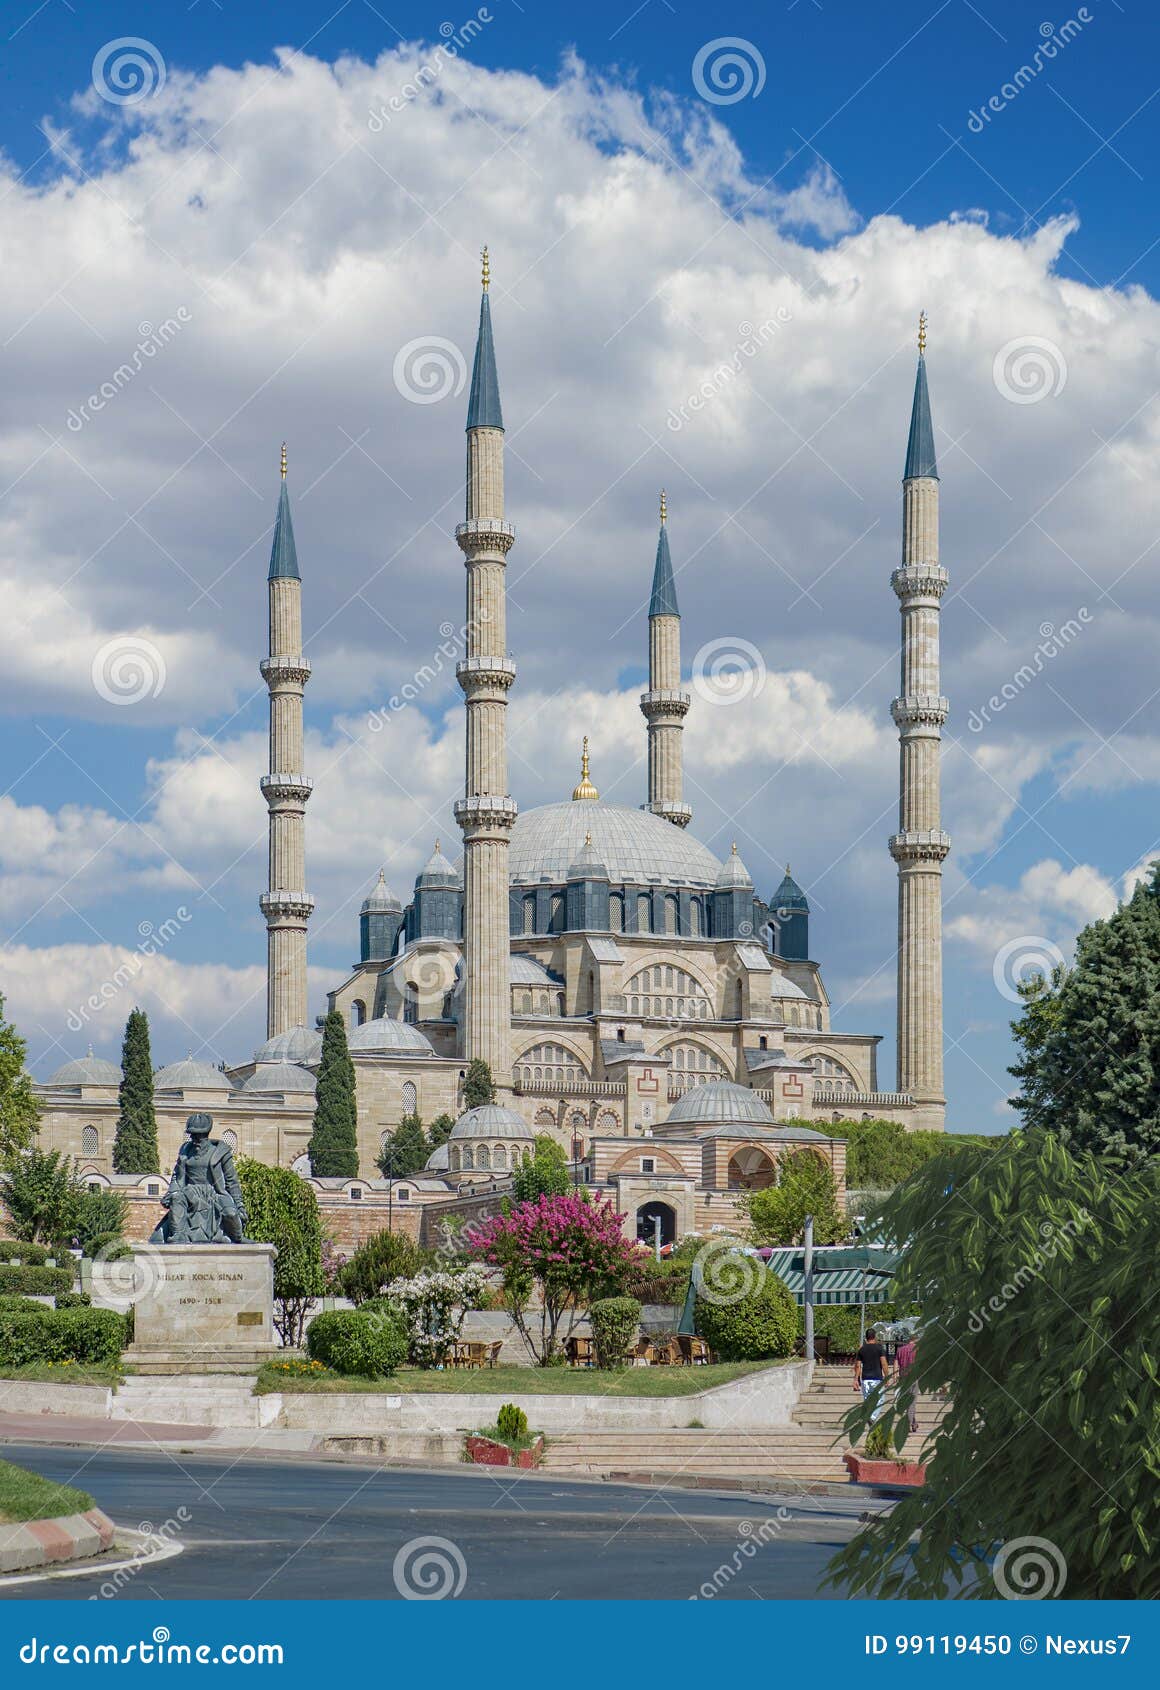 selimiye mosque in edirne